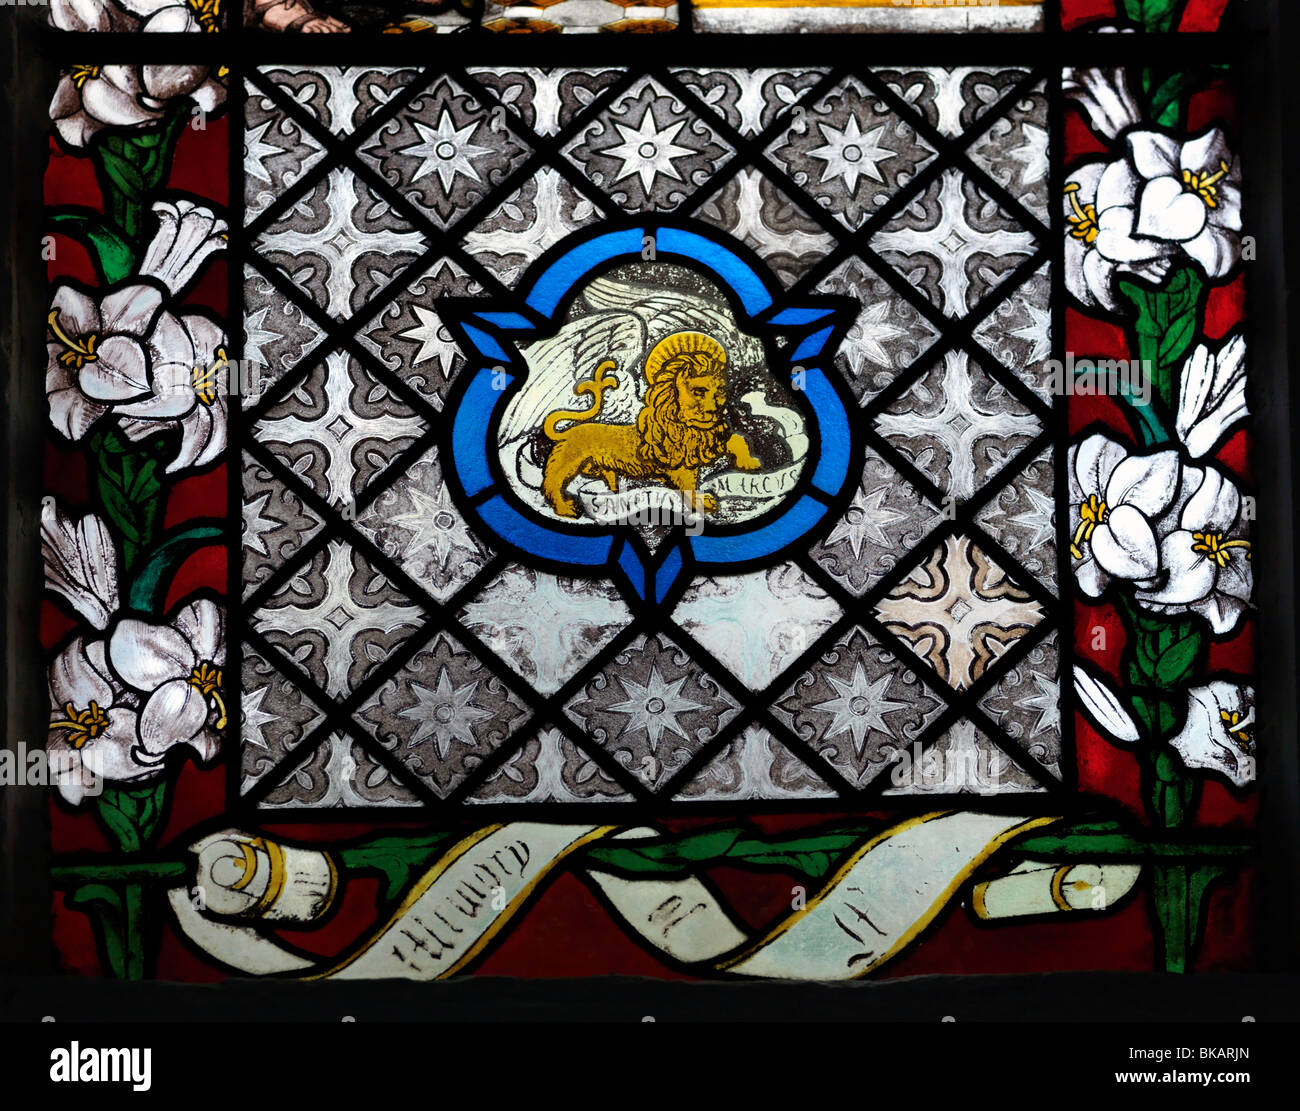 Pfarrkirche St. Peter Walton auf dem Hügel Surrey England Glasmalerei Fenster am Markusplatz, die der Evangelist als Löwe symbolisiert Stockfoto